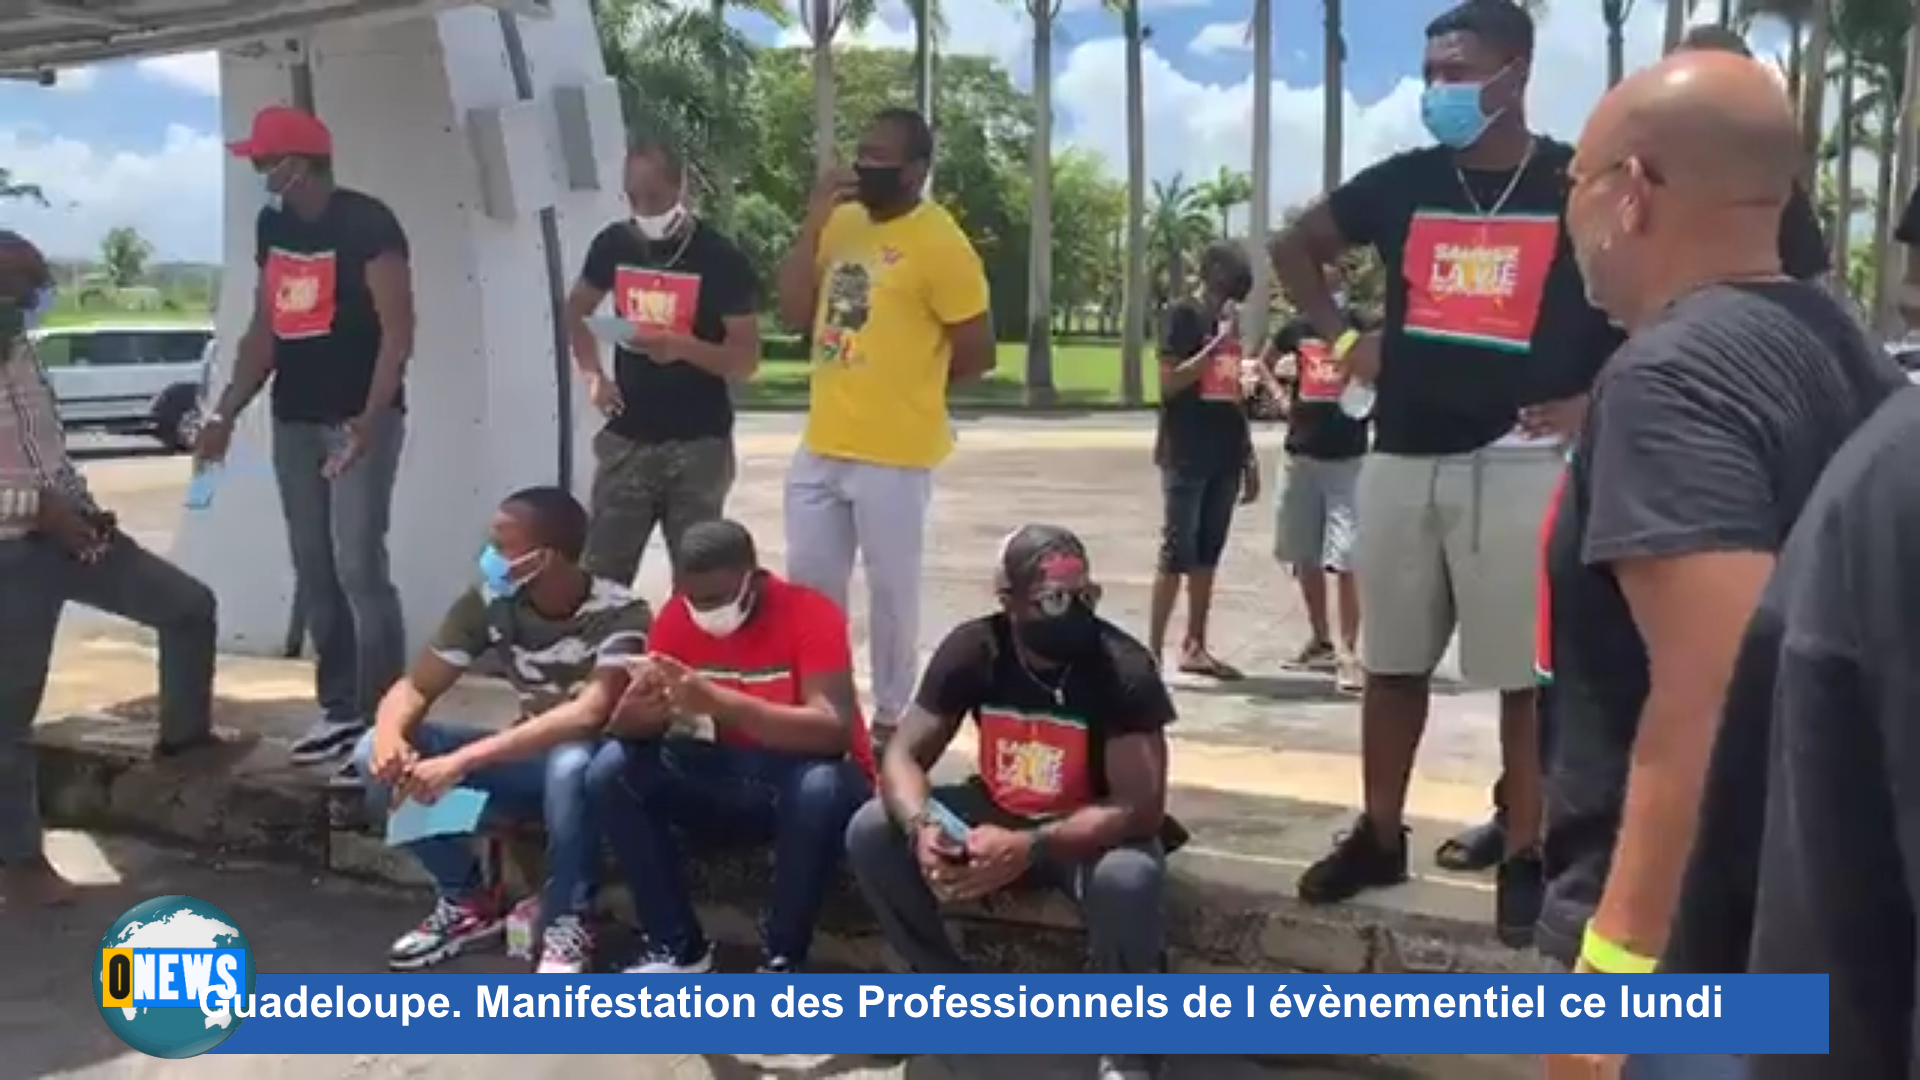 [Vidéo] Onews Guadeloupe. Manifestation des Professionnels de l évènementiel ce lundi (canal 10)